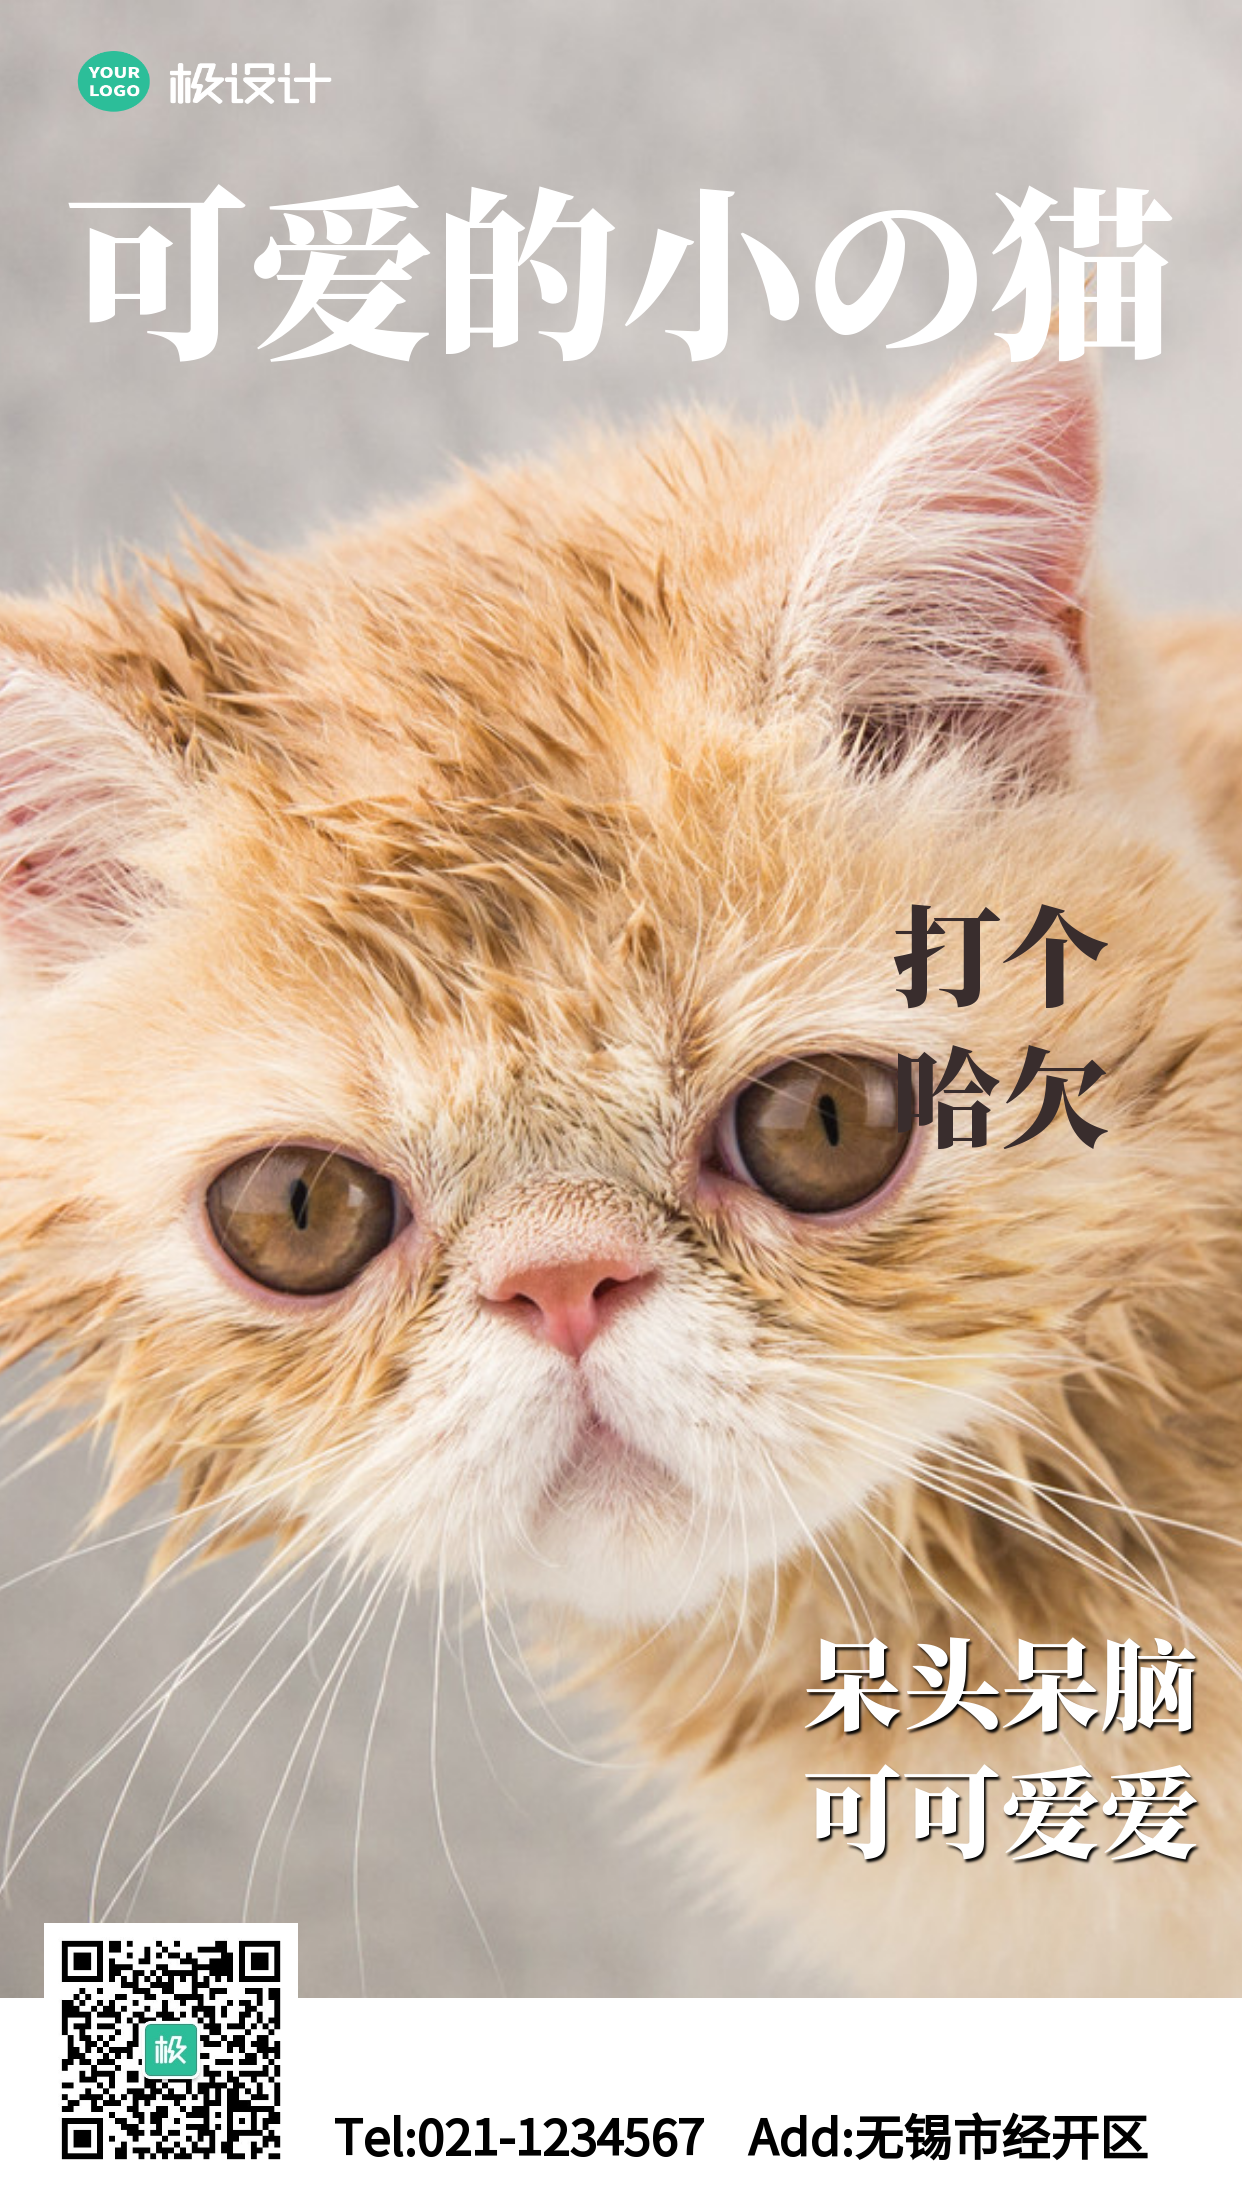 简约风格可爱猫科普宣传手机海报